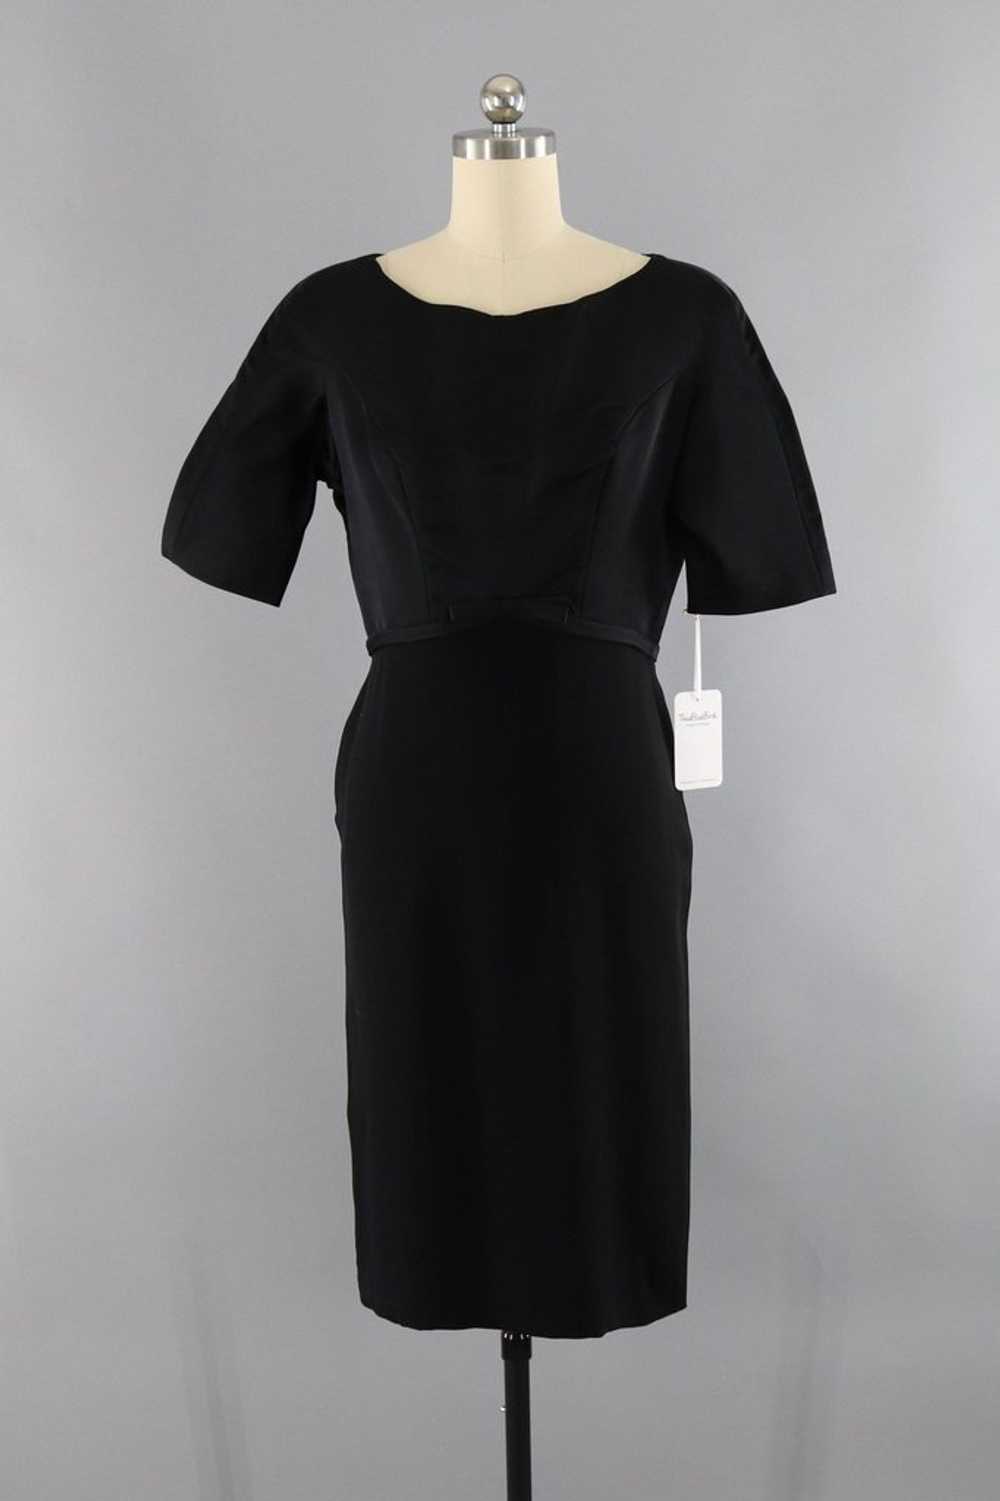 Vintage Black Satin Crepe Cocktail Dress - image 1